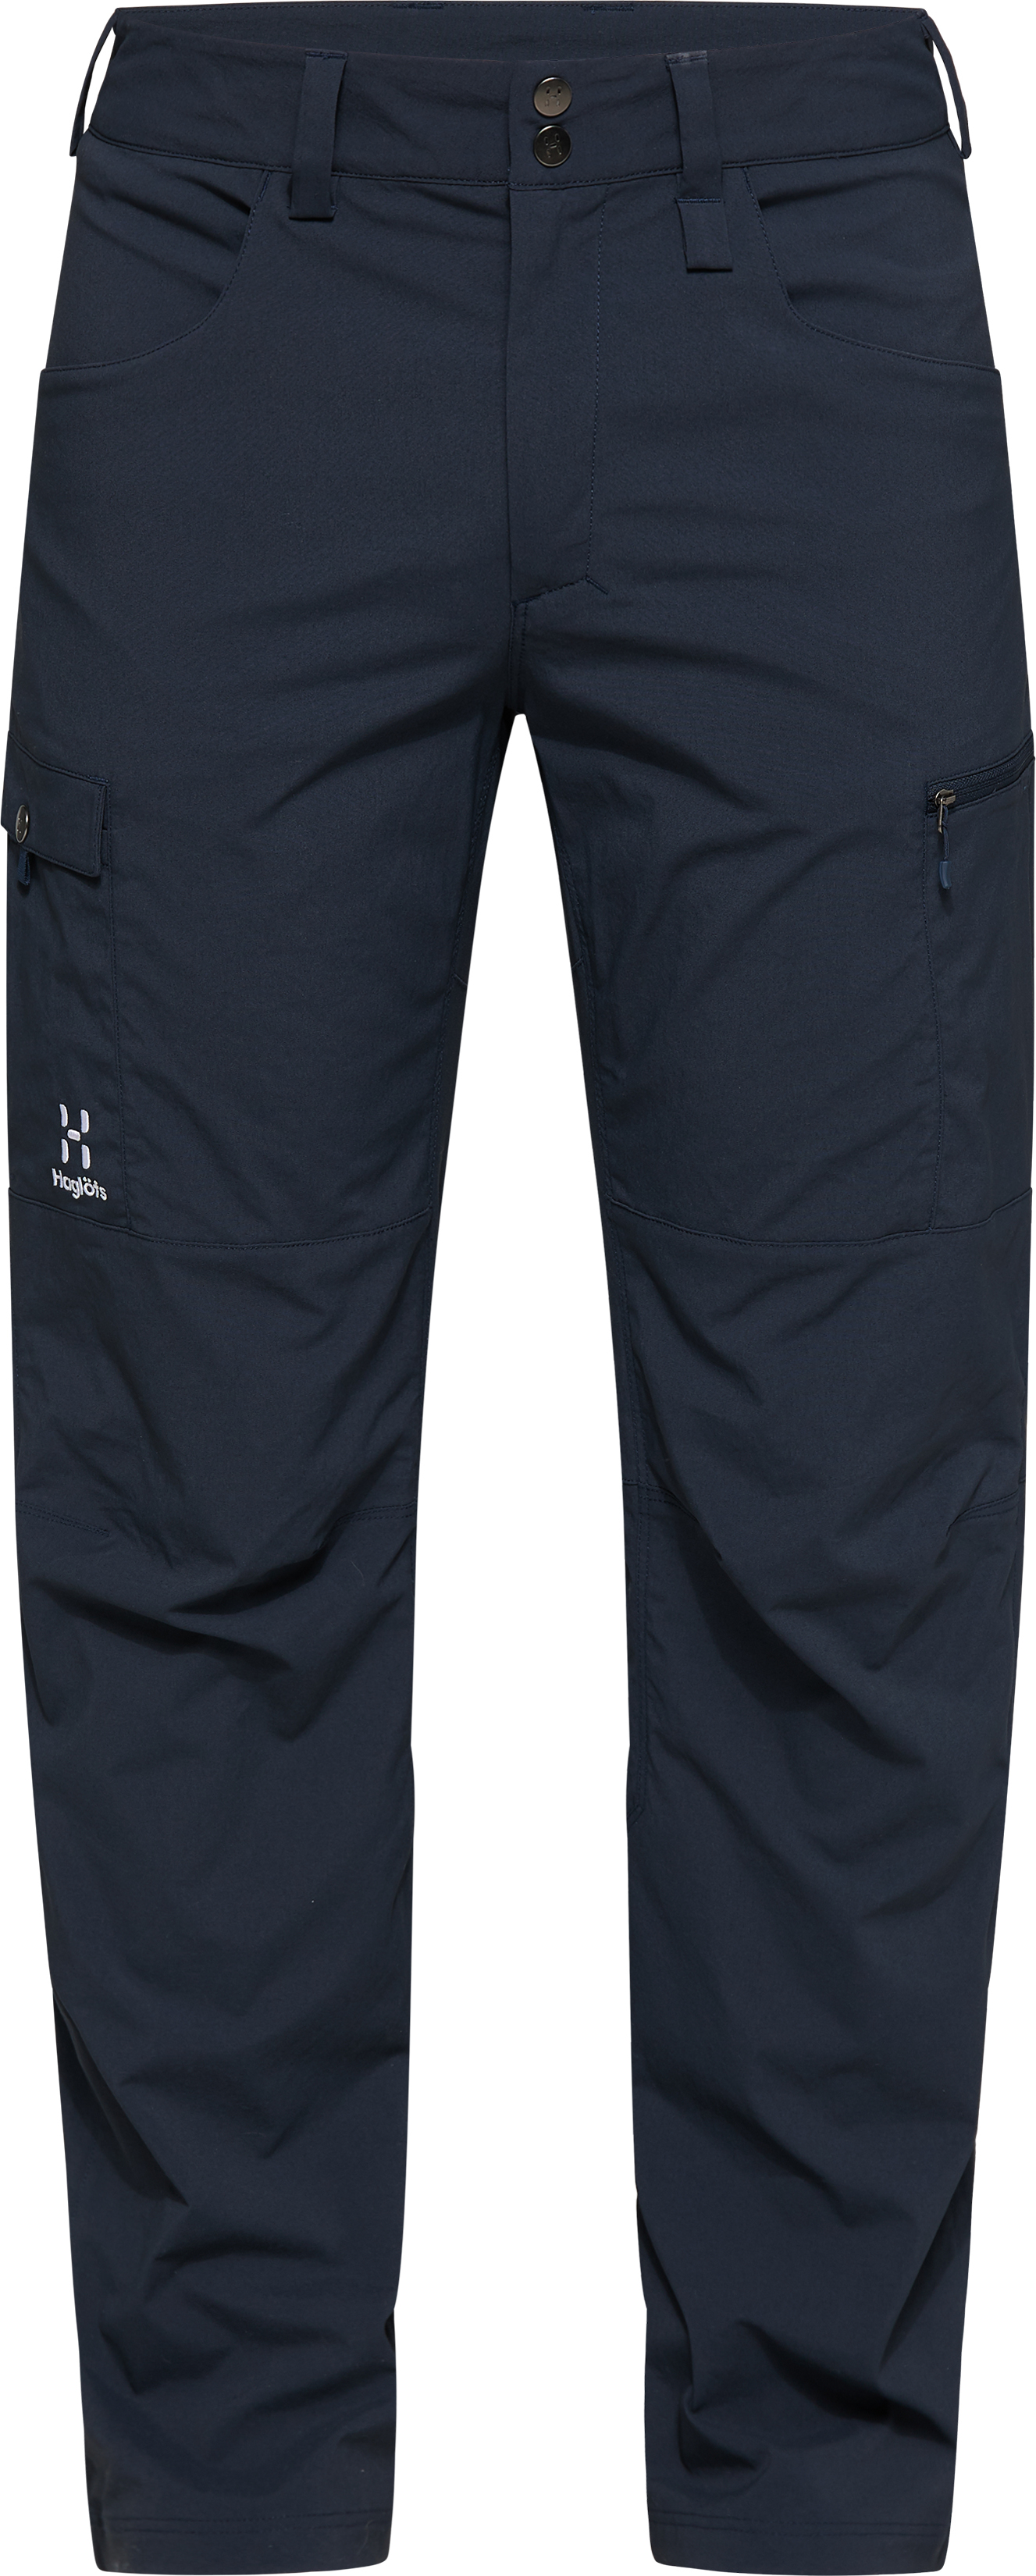 Haglofs Mens XL / 54 Mid Fjell Pants - W40 L34 - Hiking Walking Trousers RP  £120 | eBay